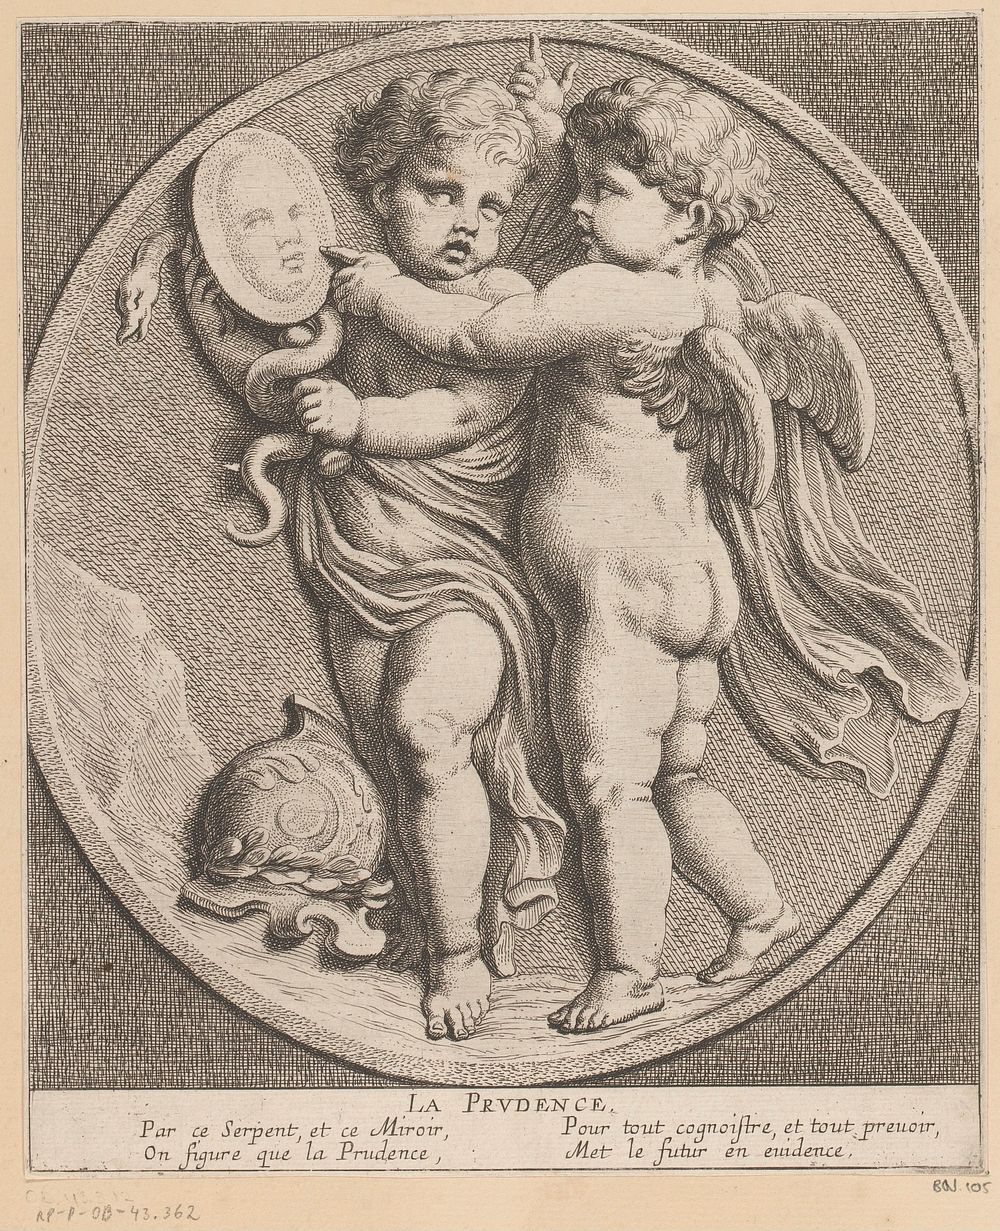 Twee putti met spiegel (1654) by Louis Ferdinand I Elle, Gerard van Opstal, Tetelin, Jacques van Merlen and Lodewijk XIV…